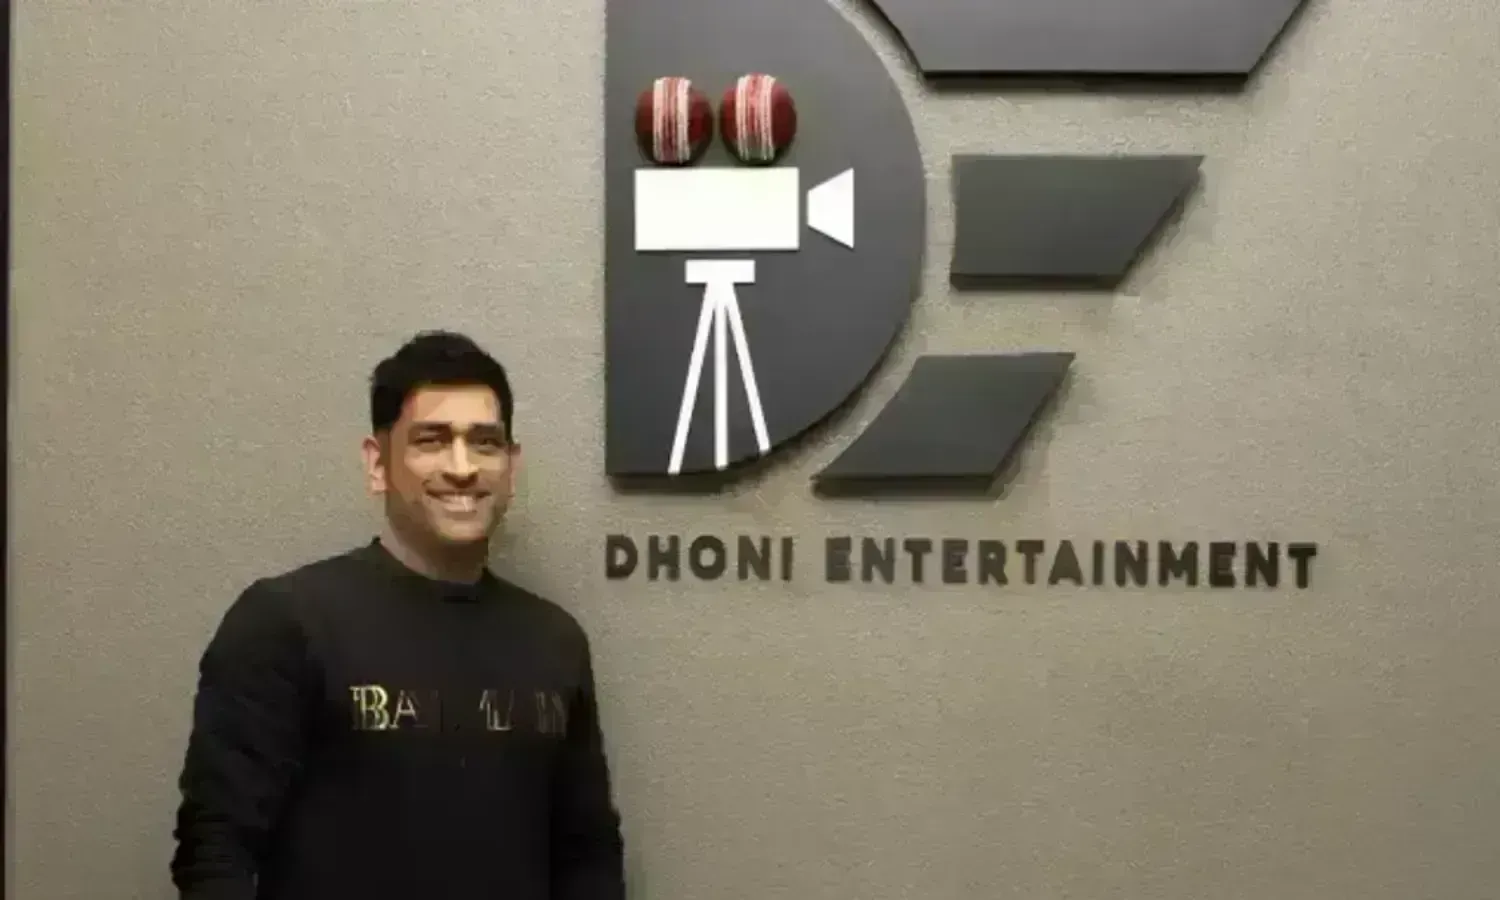 MS Dhoni बनाना चाहते हैं तमिल फीचर फिल्म, पत्नी साक्षी के साथ लॉन्च करेंगे अपनी प्रोडक्शन हाउस